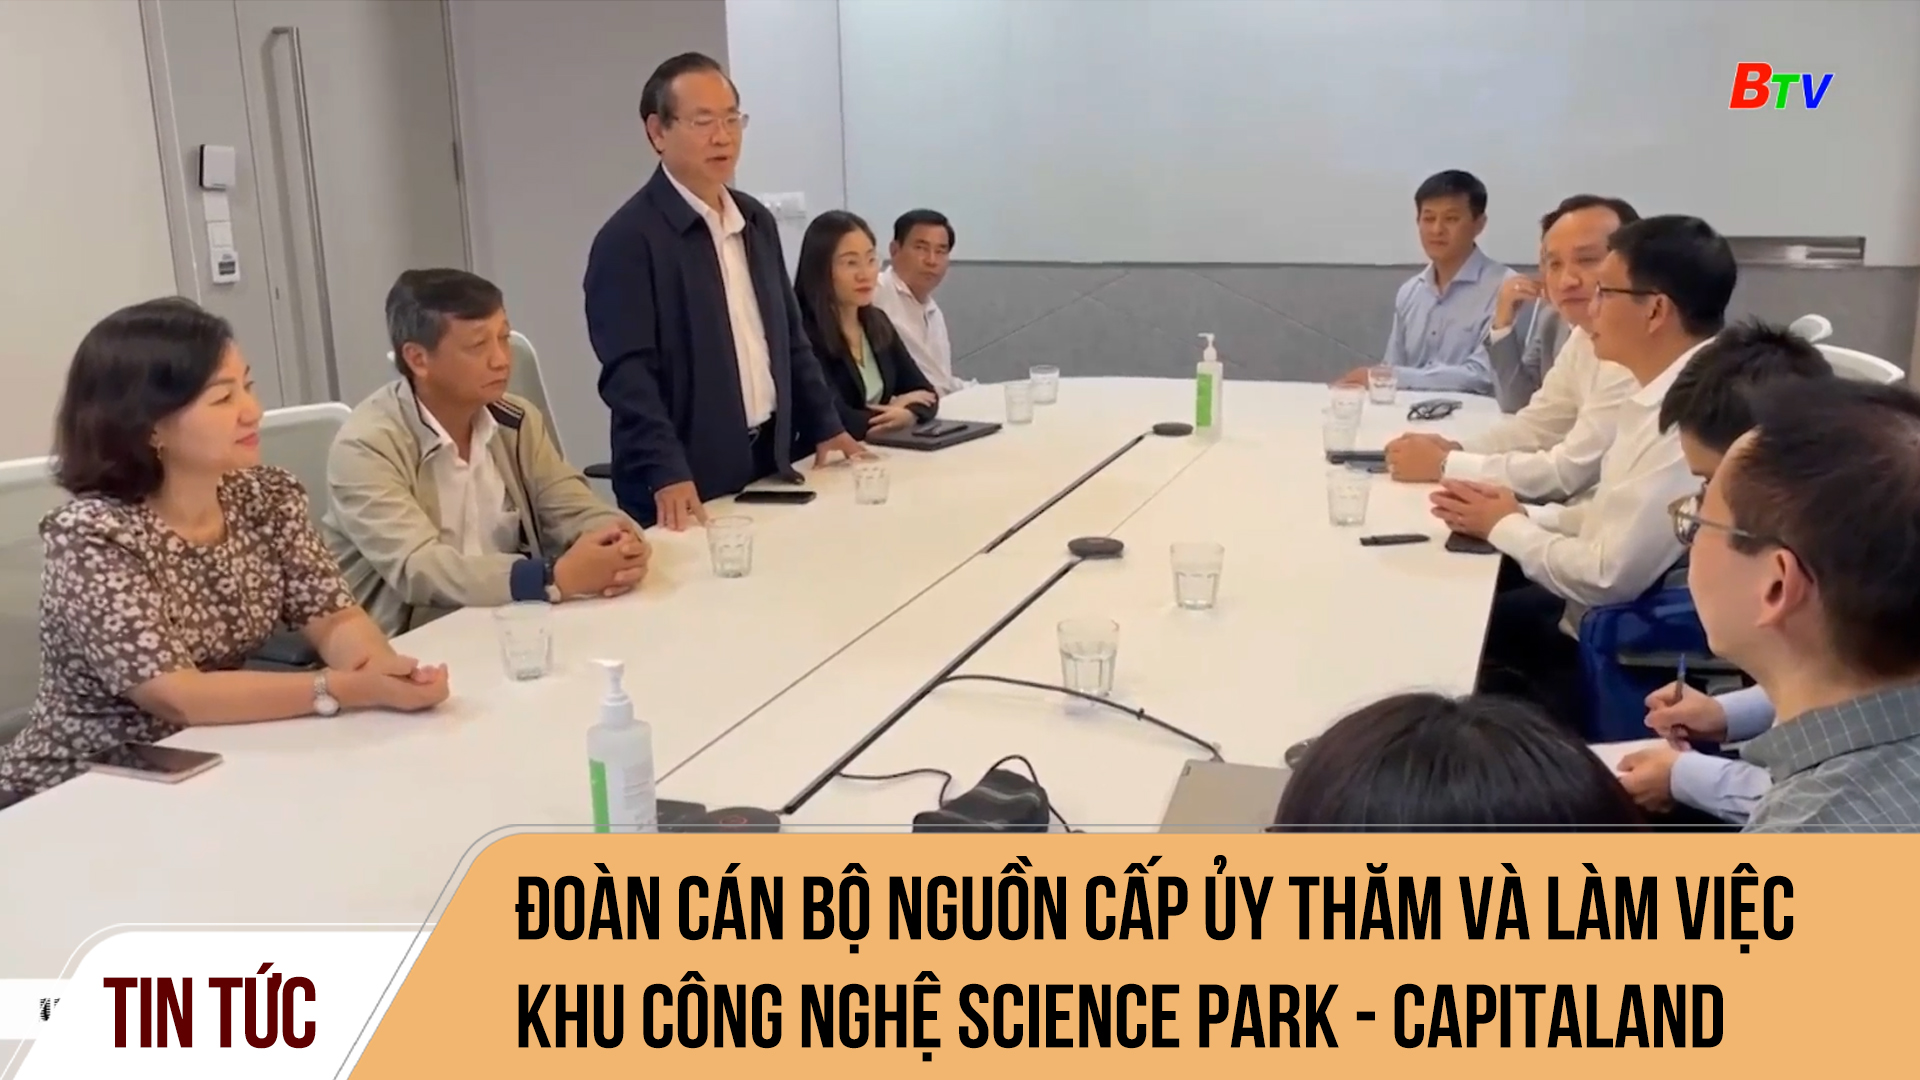 Đoàn cán bộ nguồn cấp ủy thăm và làm việc Khu công nghệ Science Park - Capitaland